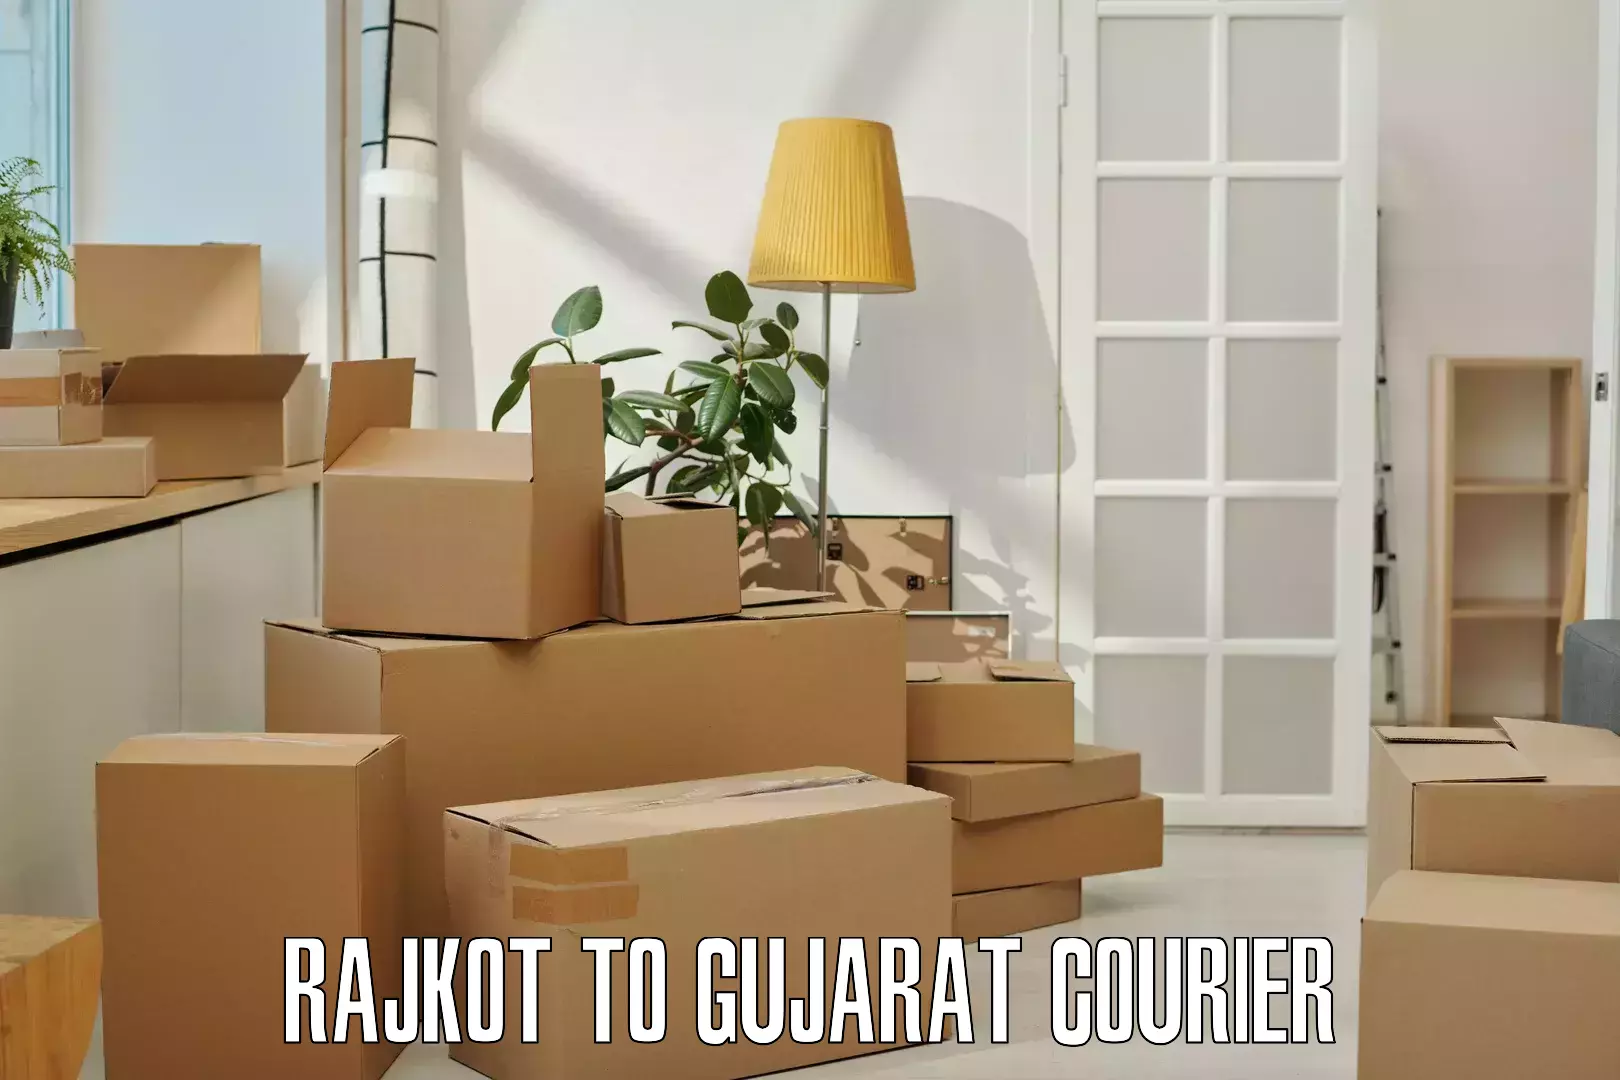 Express package handling Rajkot to Gujarat